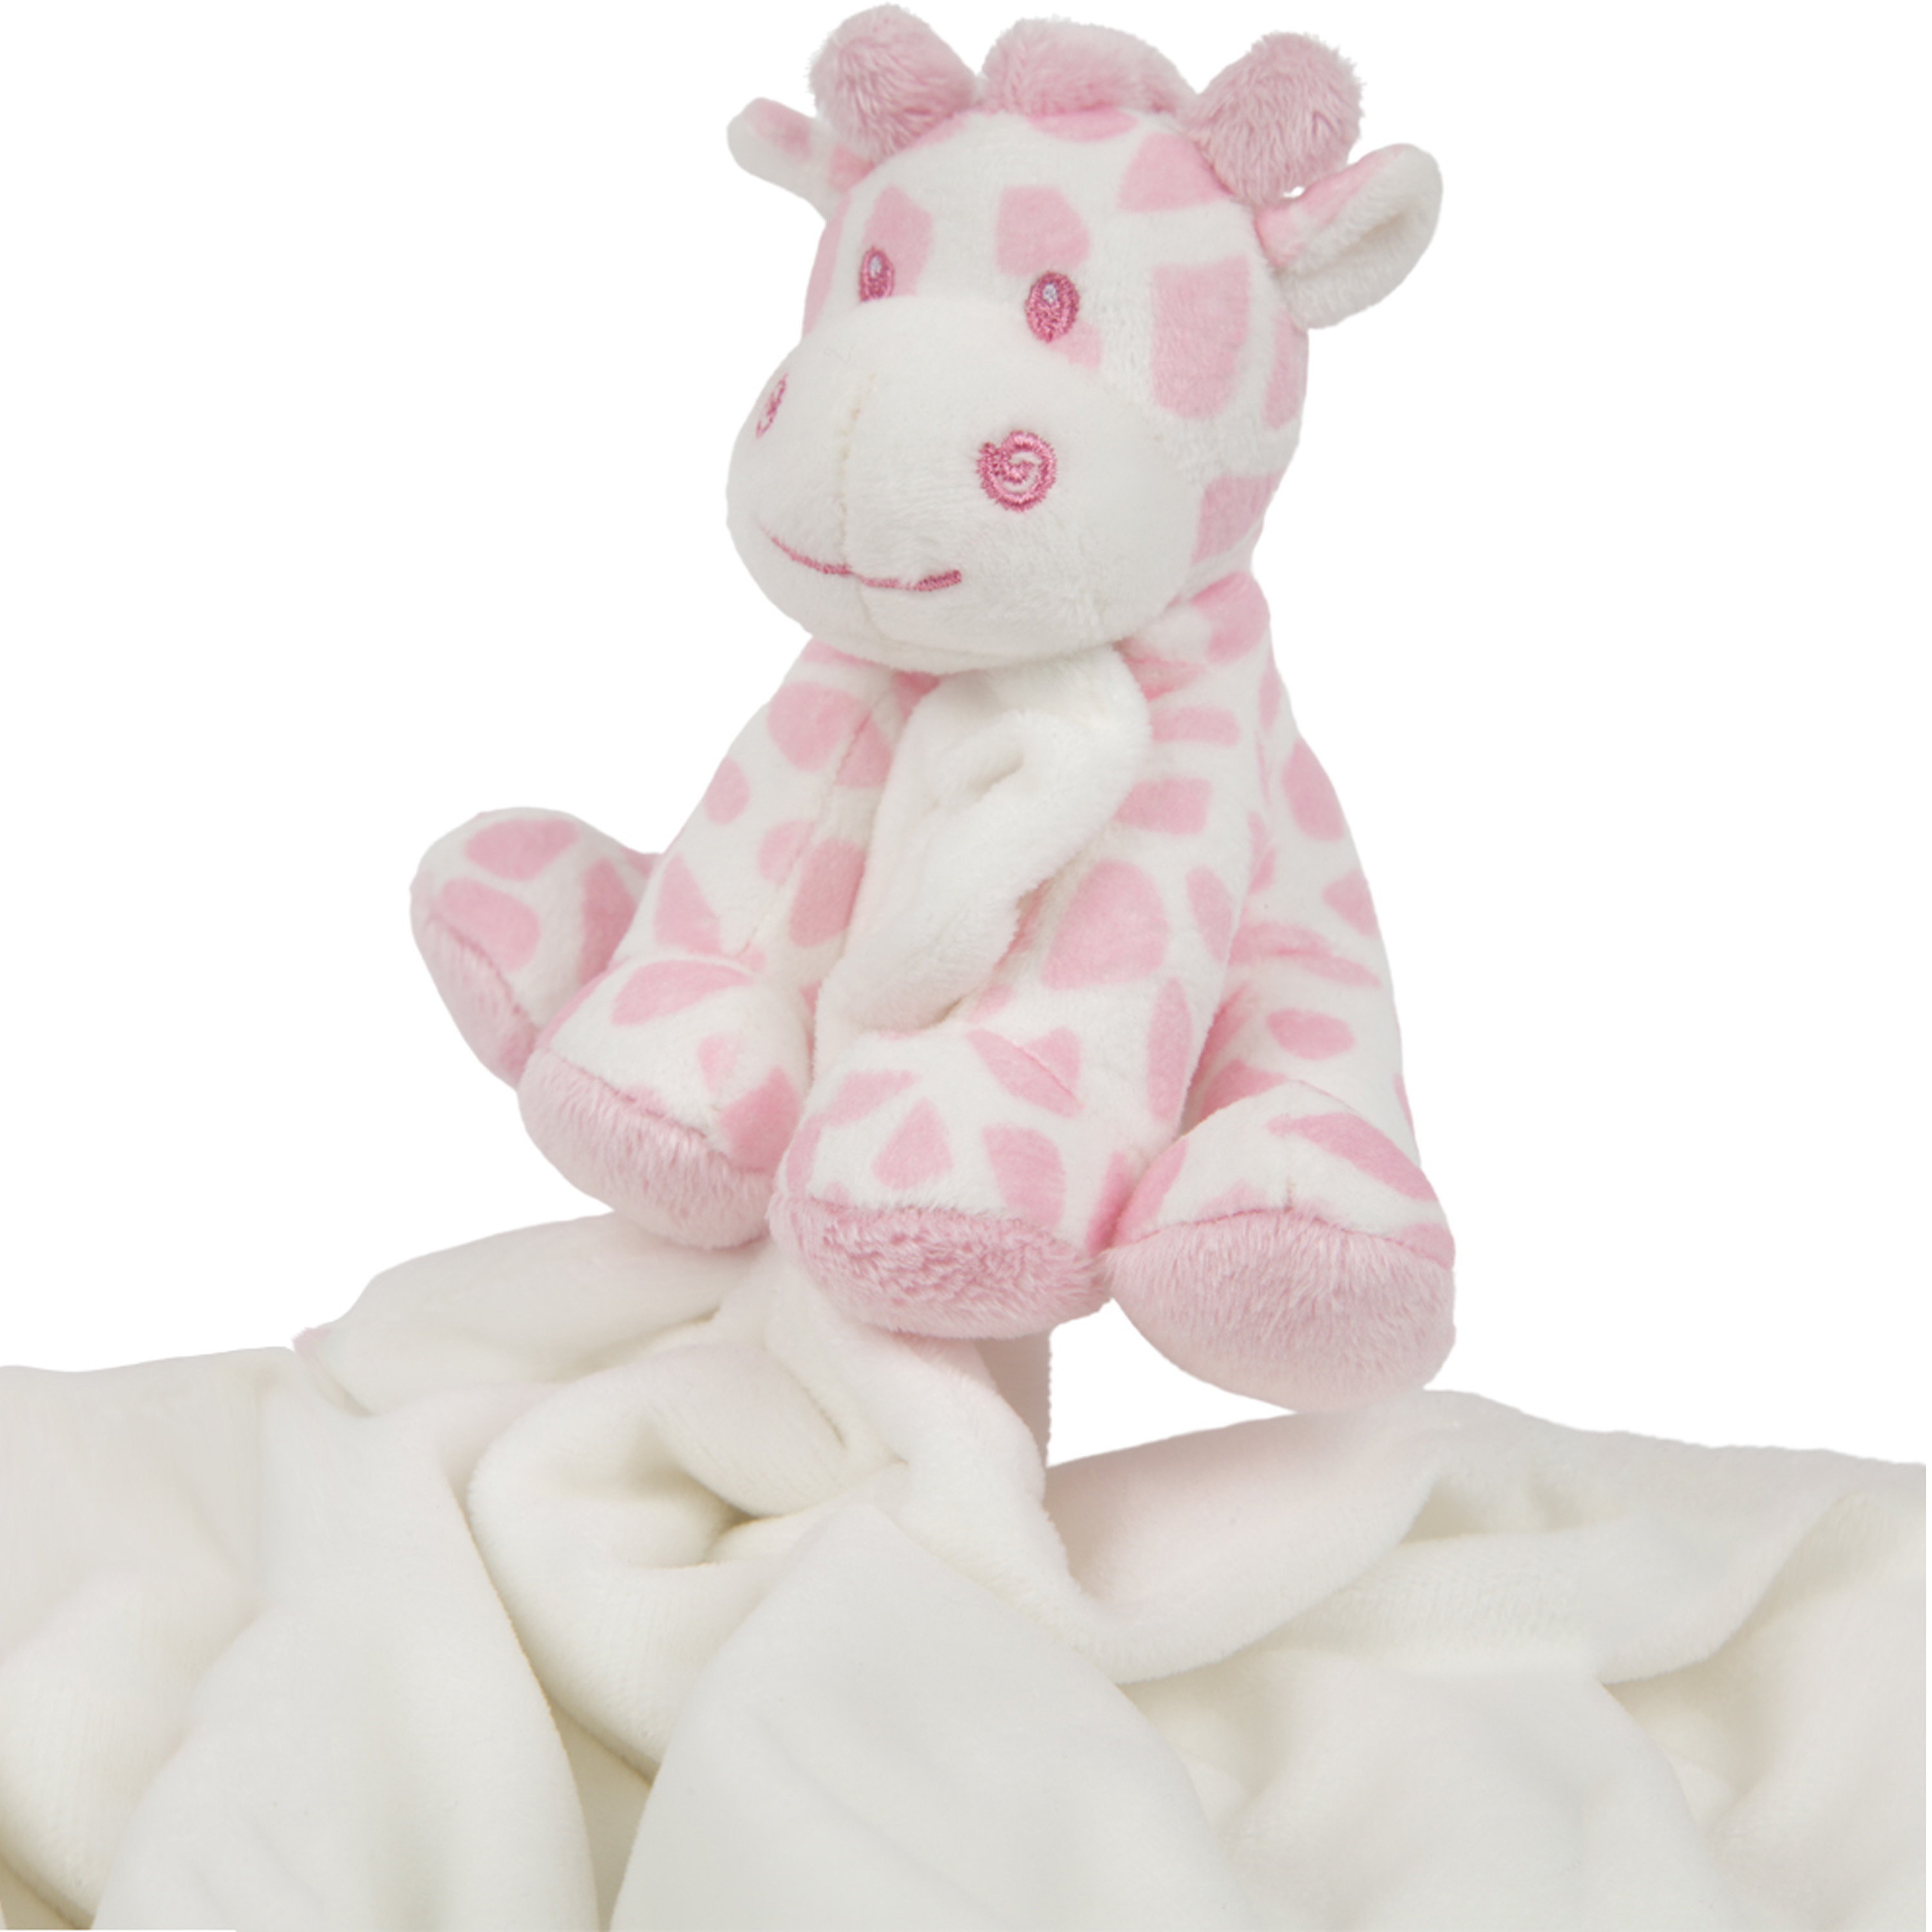 Suki Gifts pluche gevlekte giraffe knuffeldier tuttel doekje roze-wit 30 cm